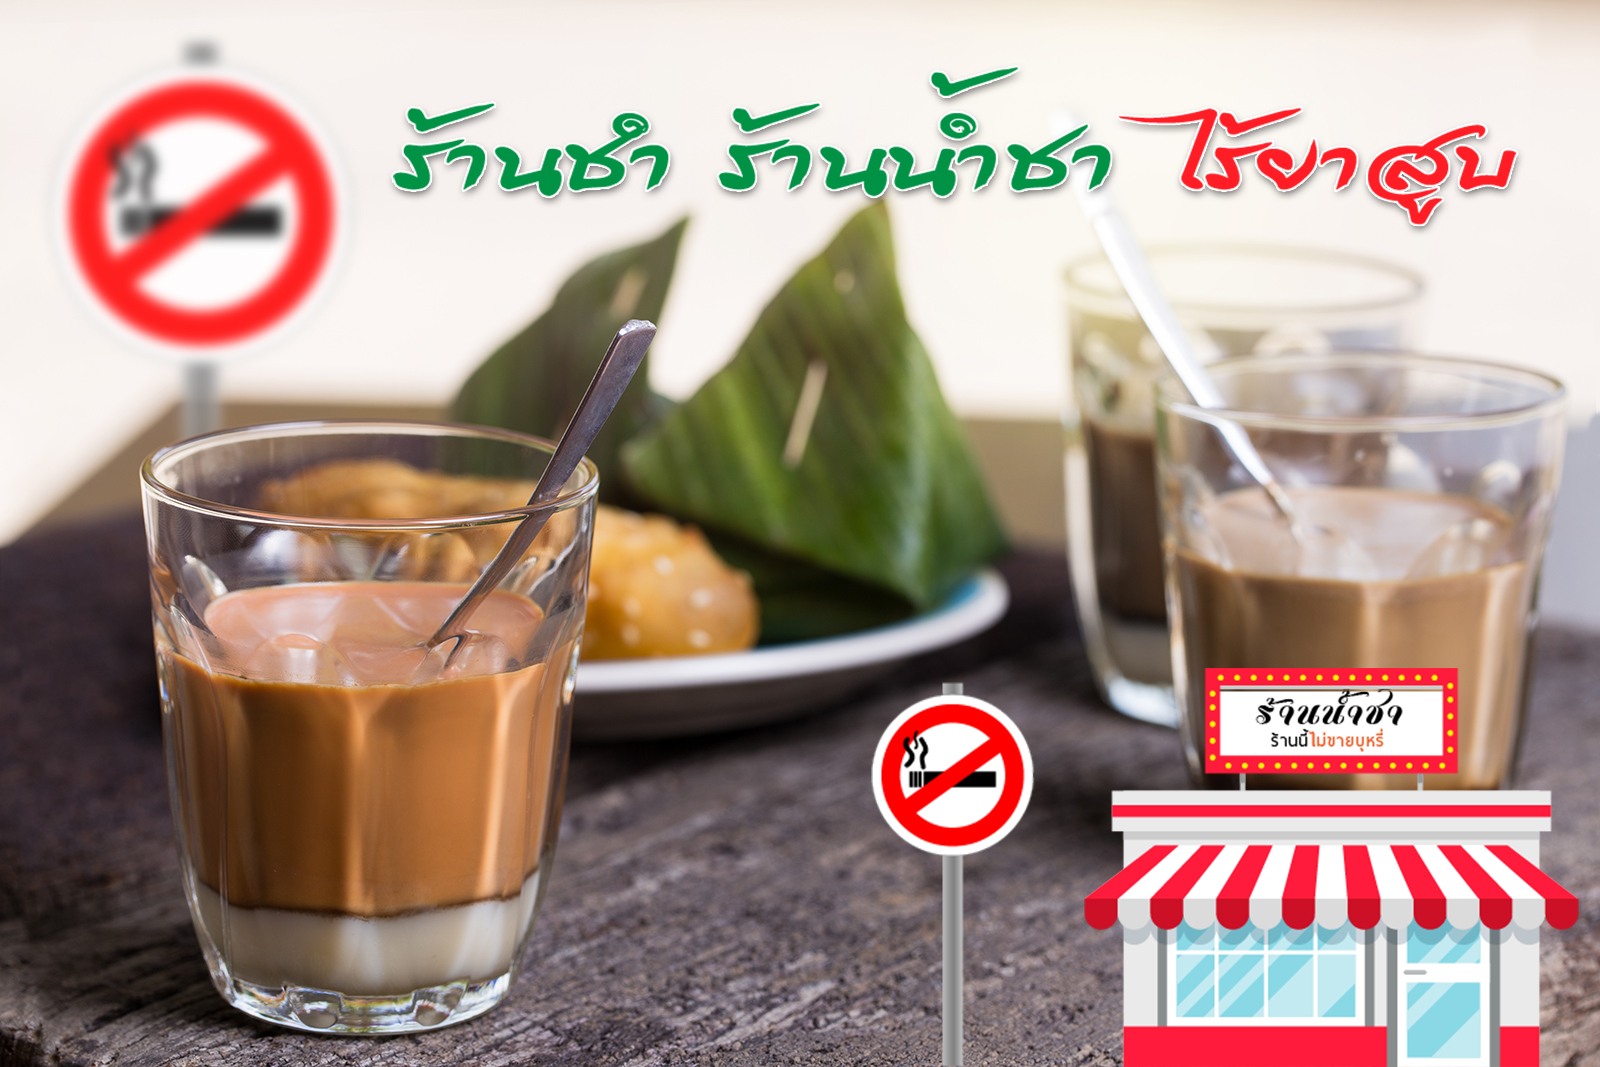 แผนงานควบคุมการบริโภคยาสูบมุสลิมไทย